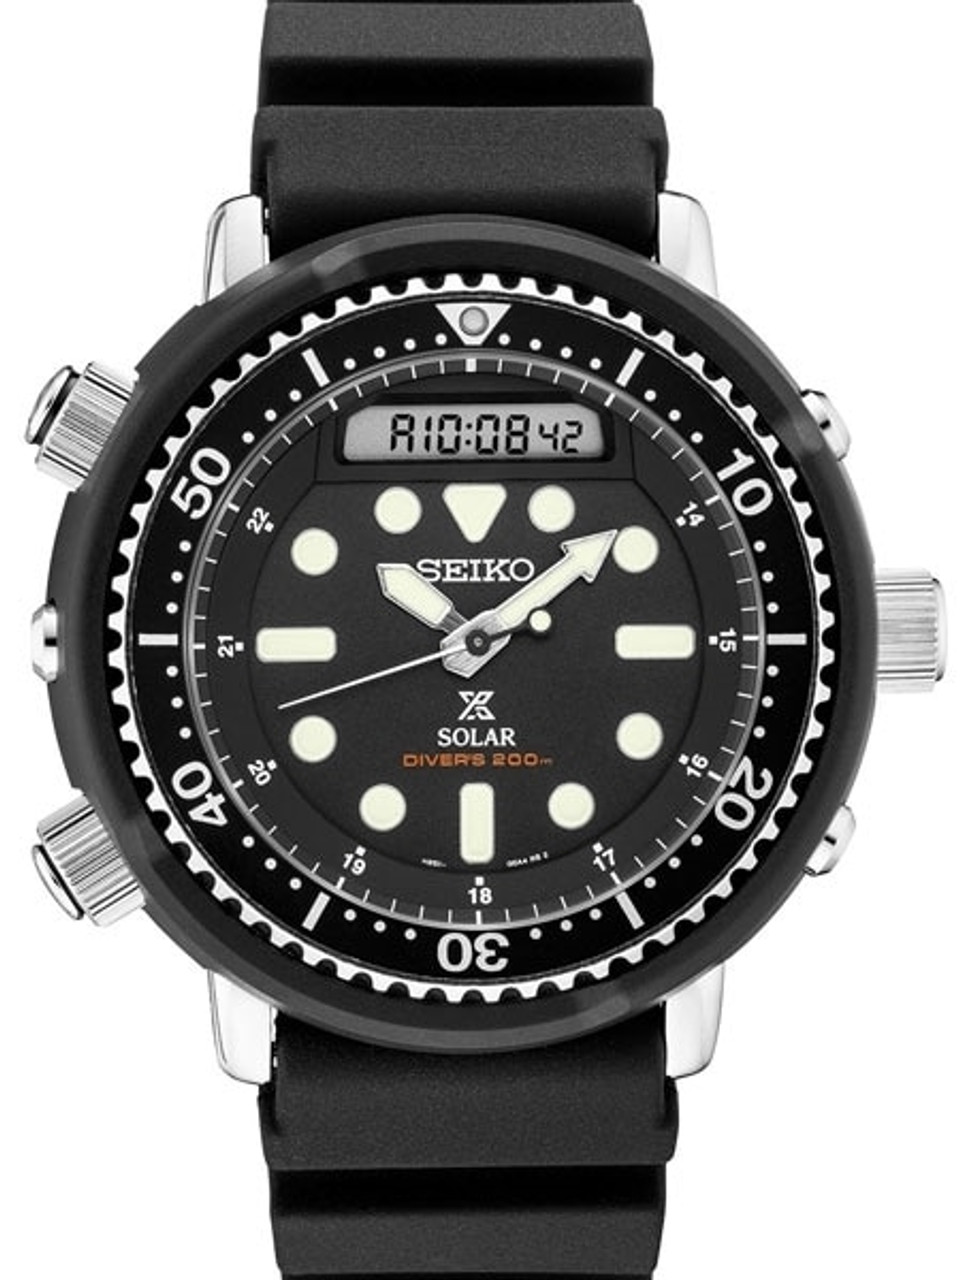 Seiko Arnie Prospex SNJ025 Tuna Solar Powered Dive Watch